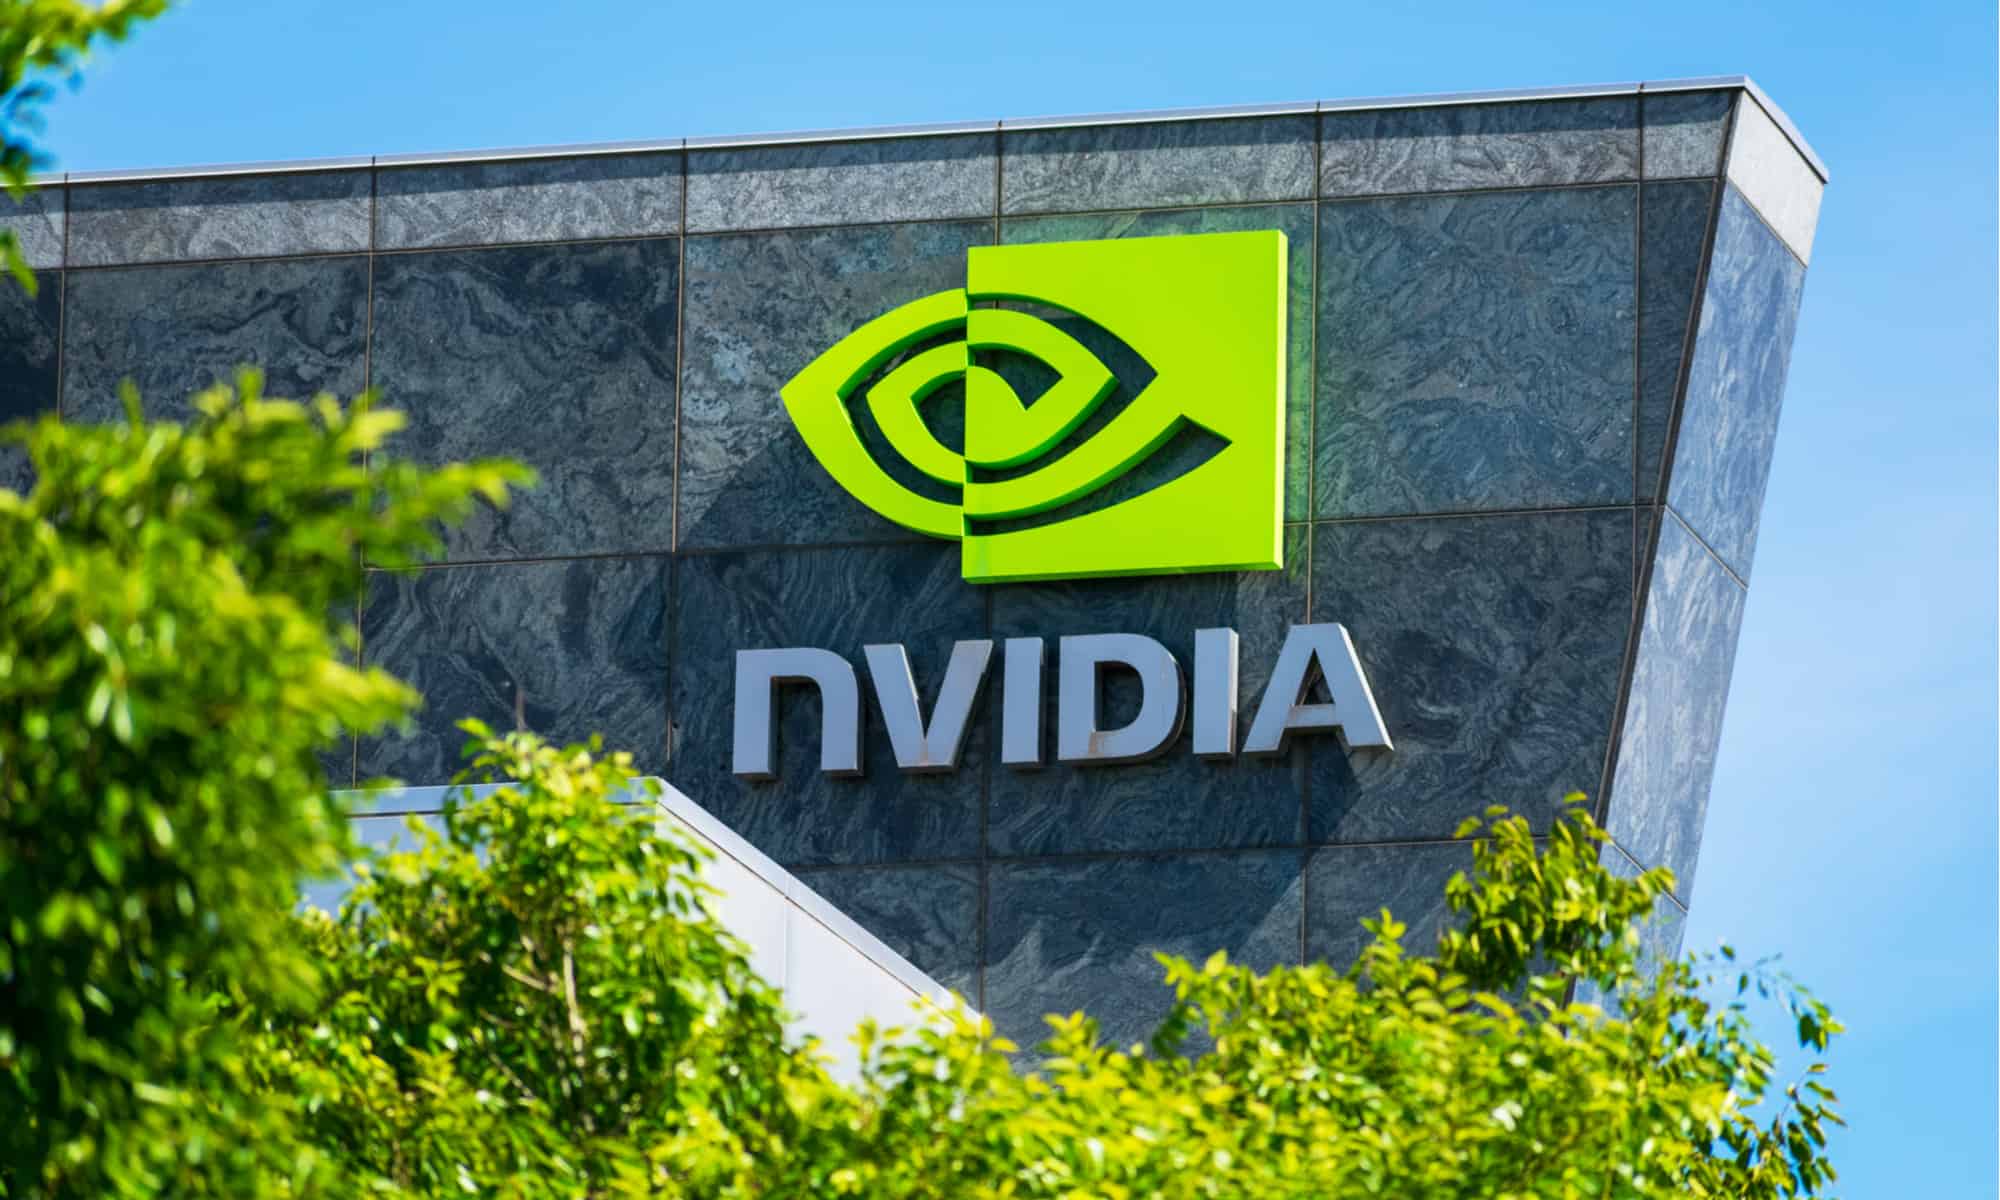 Vốn hóa tăng gấp đôi, Nvidia lọt vào "Câu lạc bộ" doanh nghiệp vốn hóa  nghìn tỷ USD - Nhịp sống kinh tế Việt Nam & Thế giới